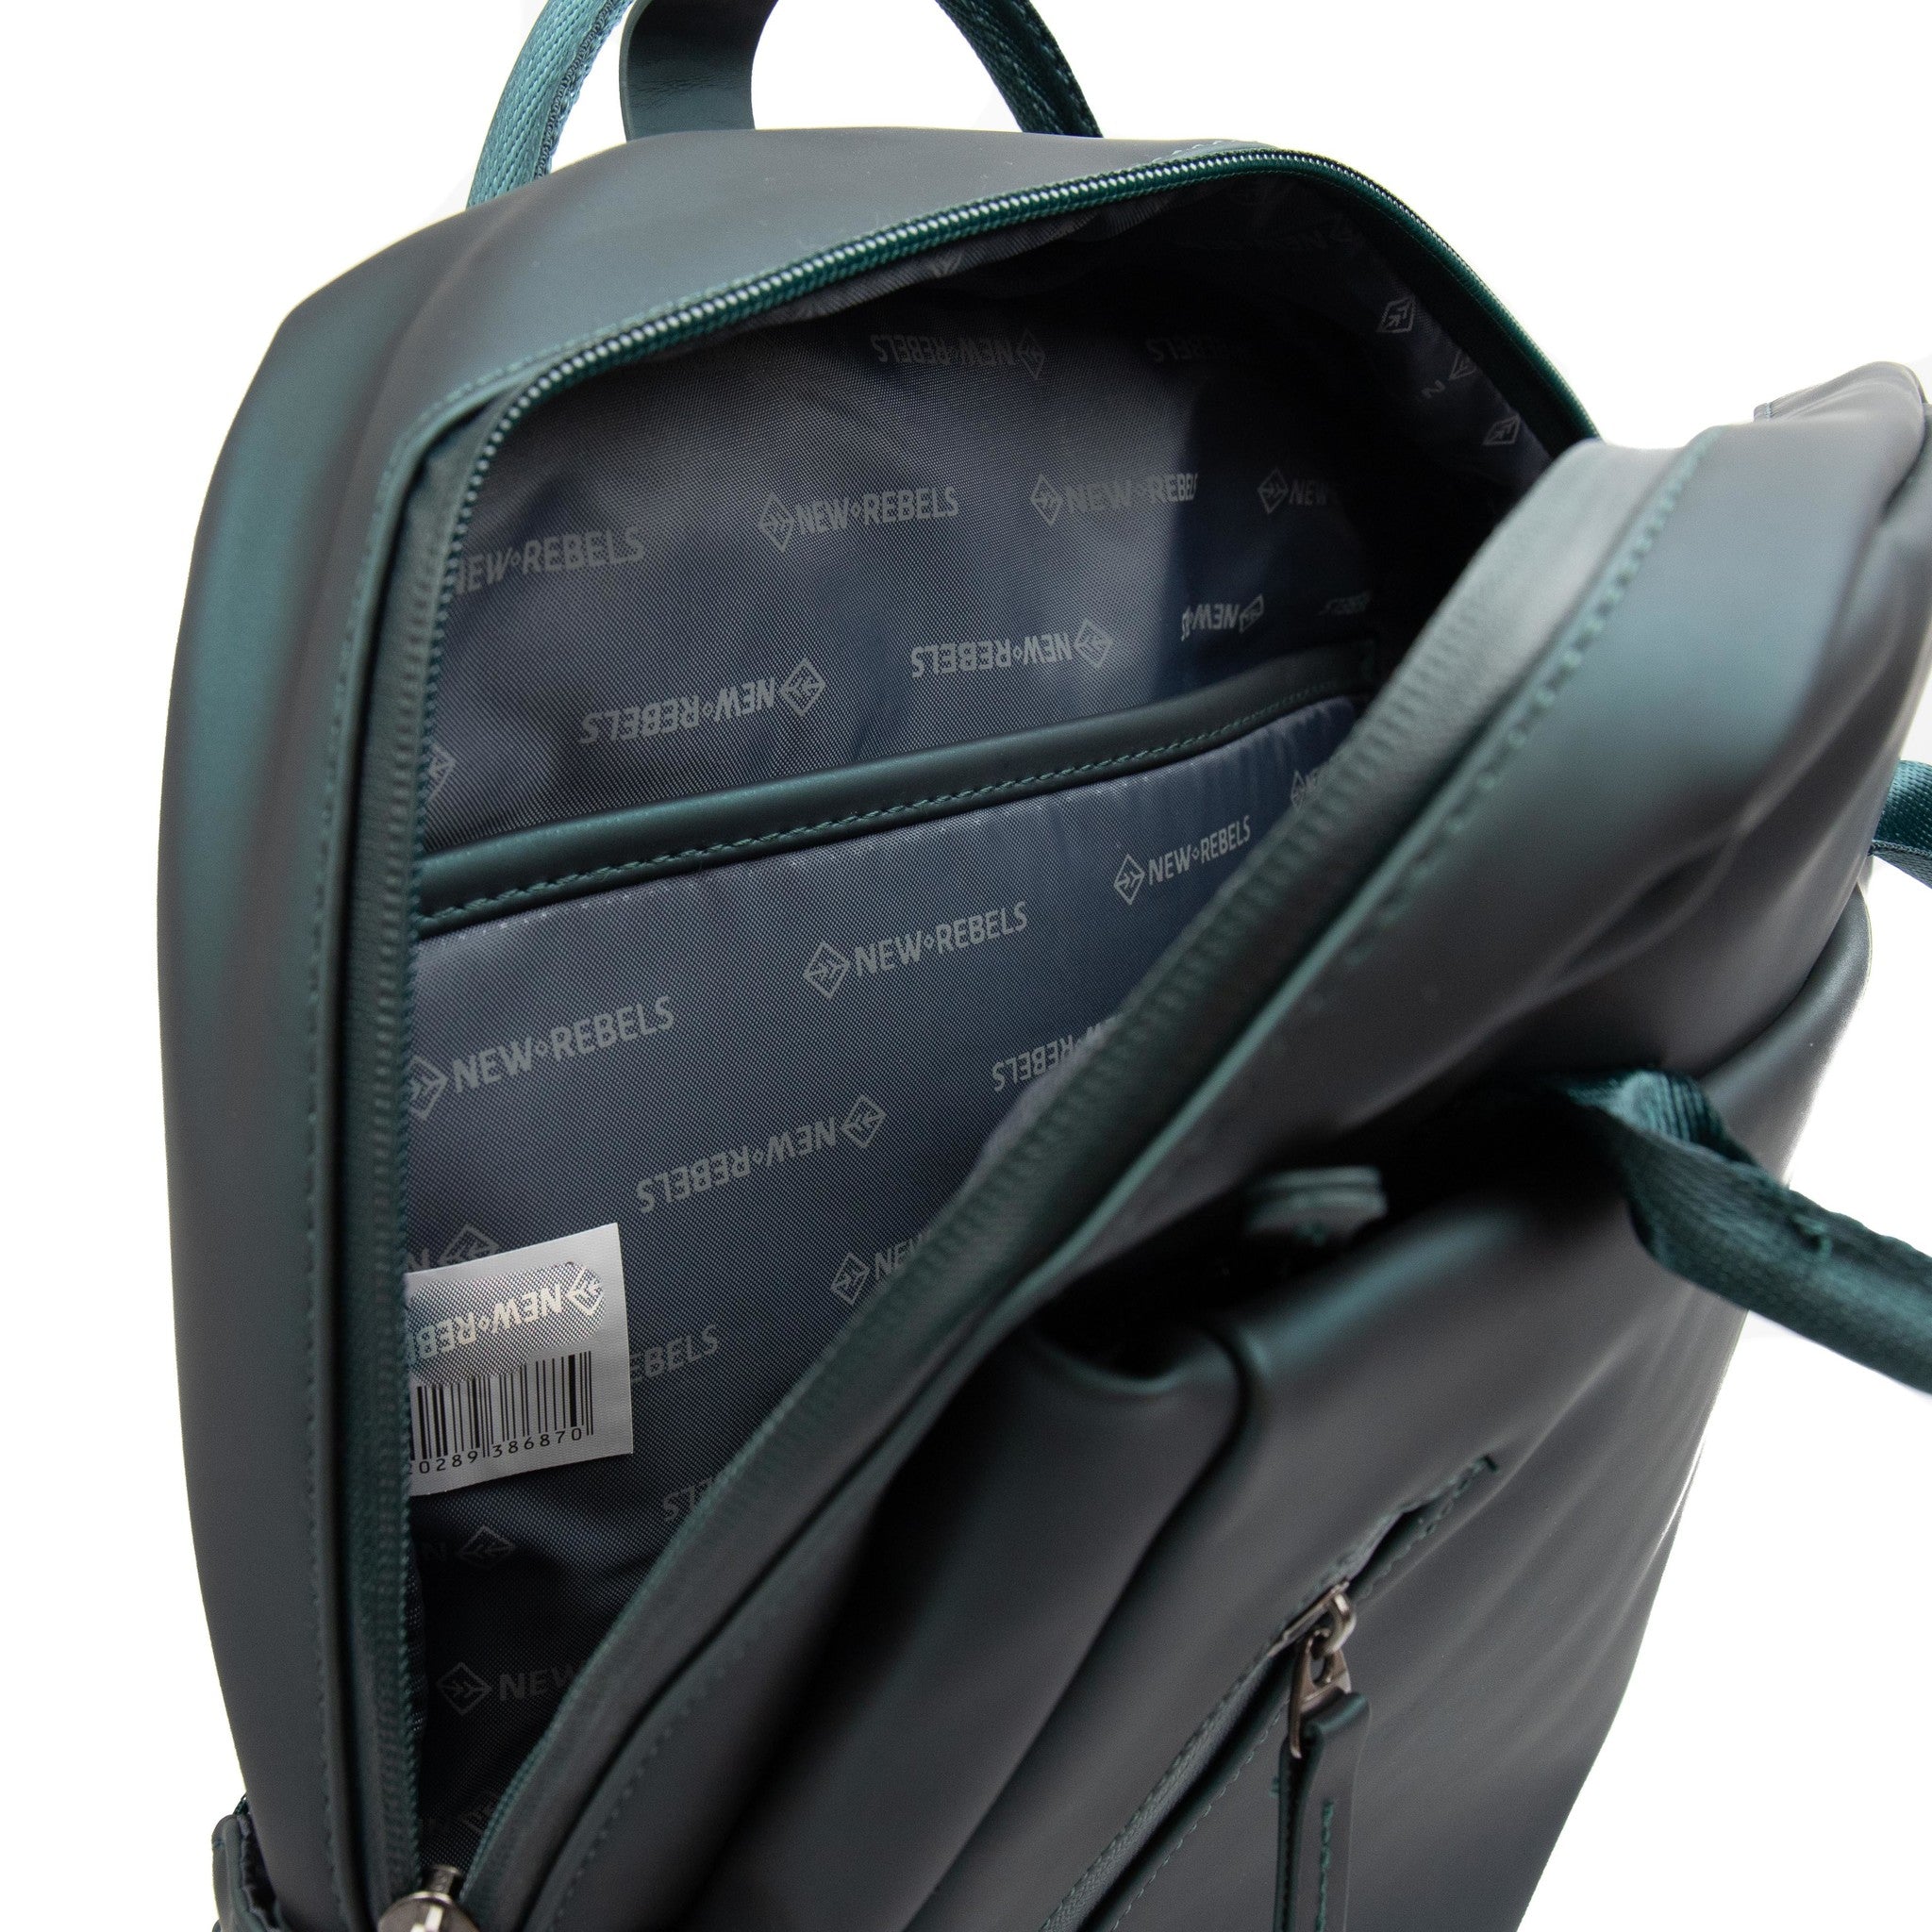 Backpack 'Harper' grey